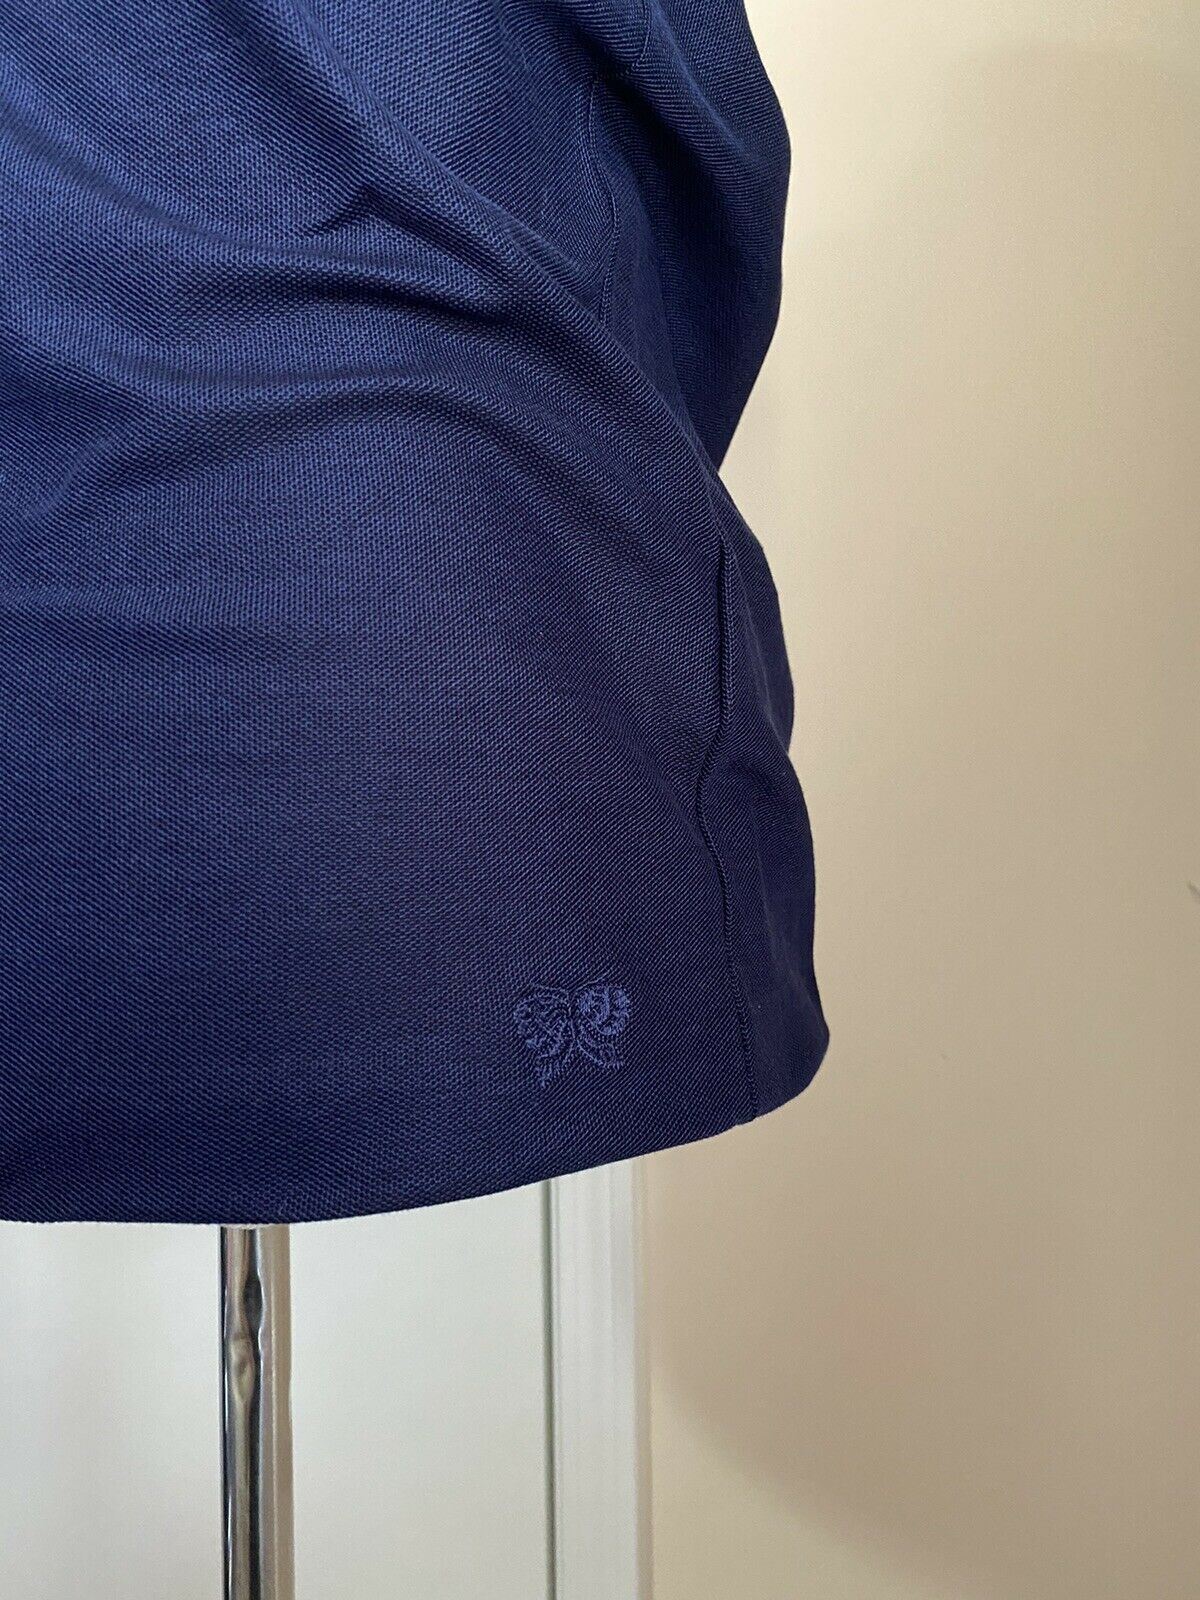 Мужская рубашка-поло Bottega Veneta, синяя, XS, 390 долларов США, США (44 ЕС), Италия